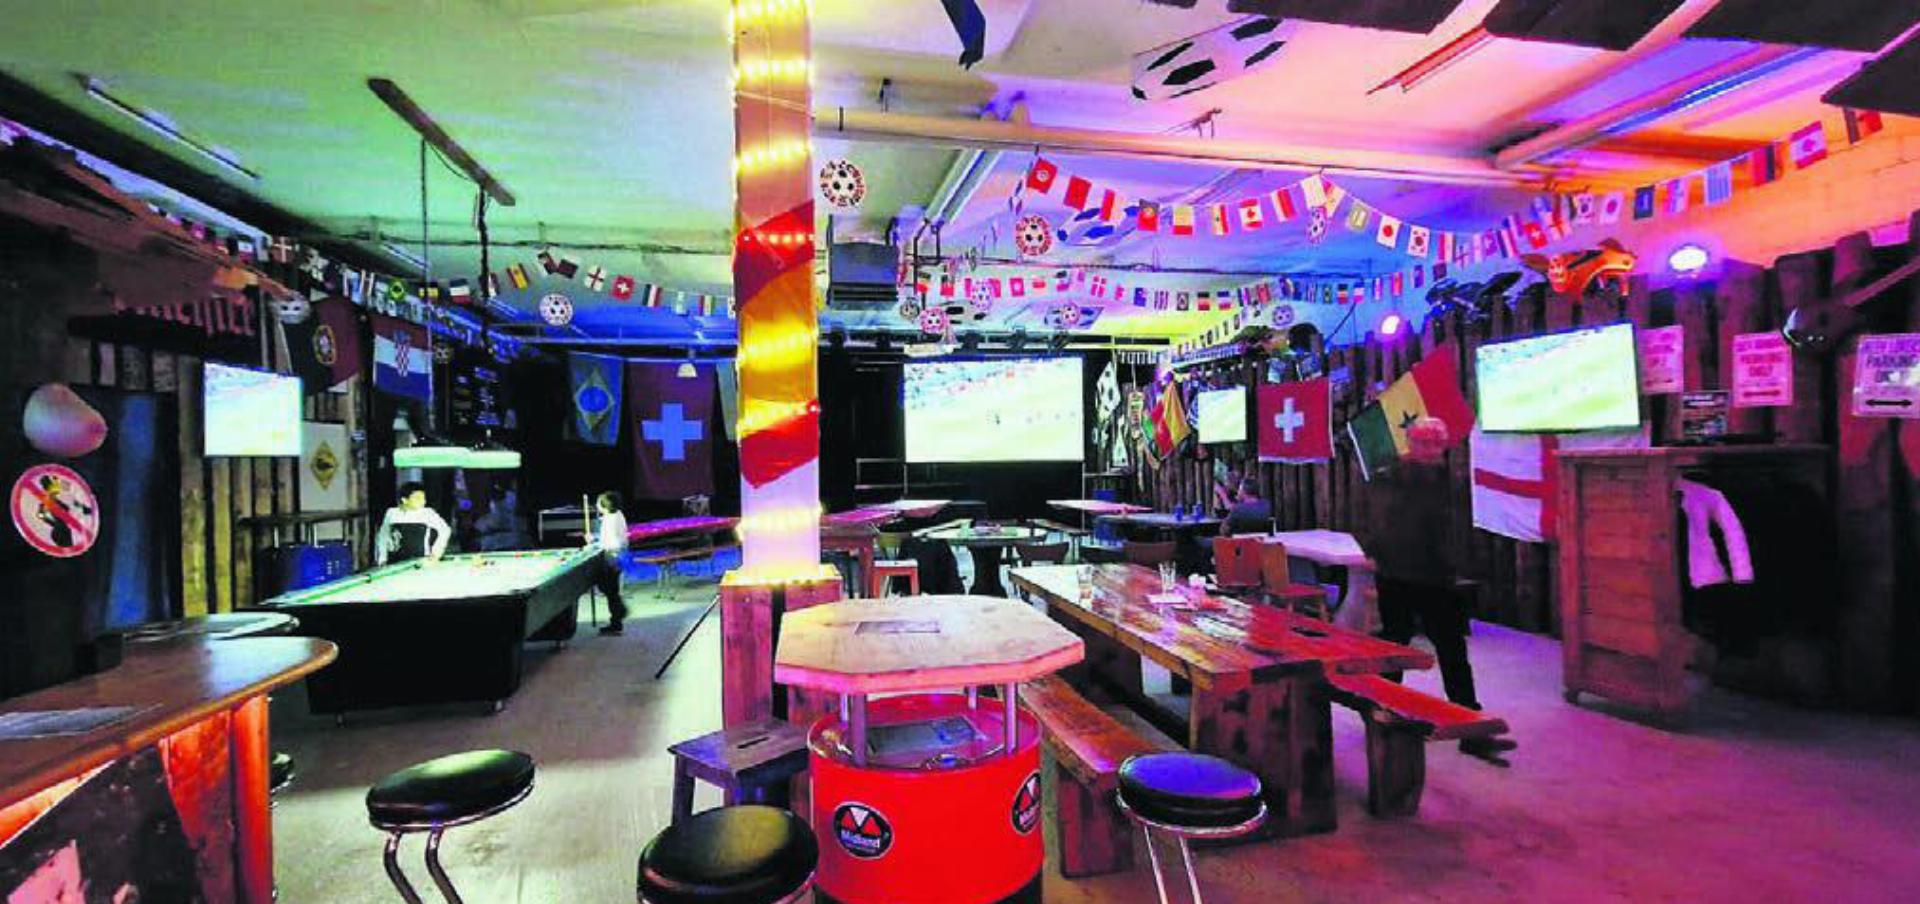 Der Gator Saloon in Muri – normalerweise finden hier Rockkonzerte statt, jetzt wurde er zur Sports-Bar. Bild: zg